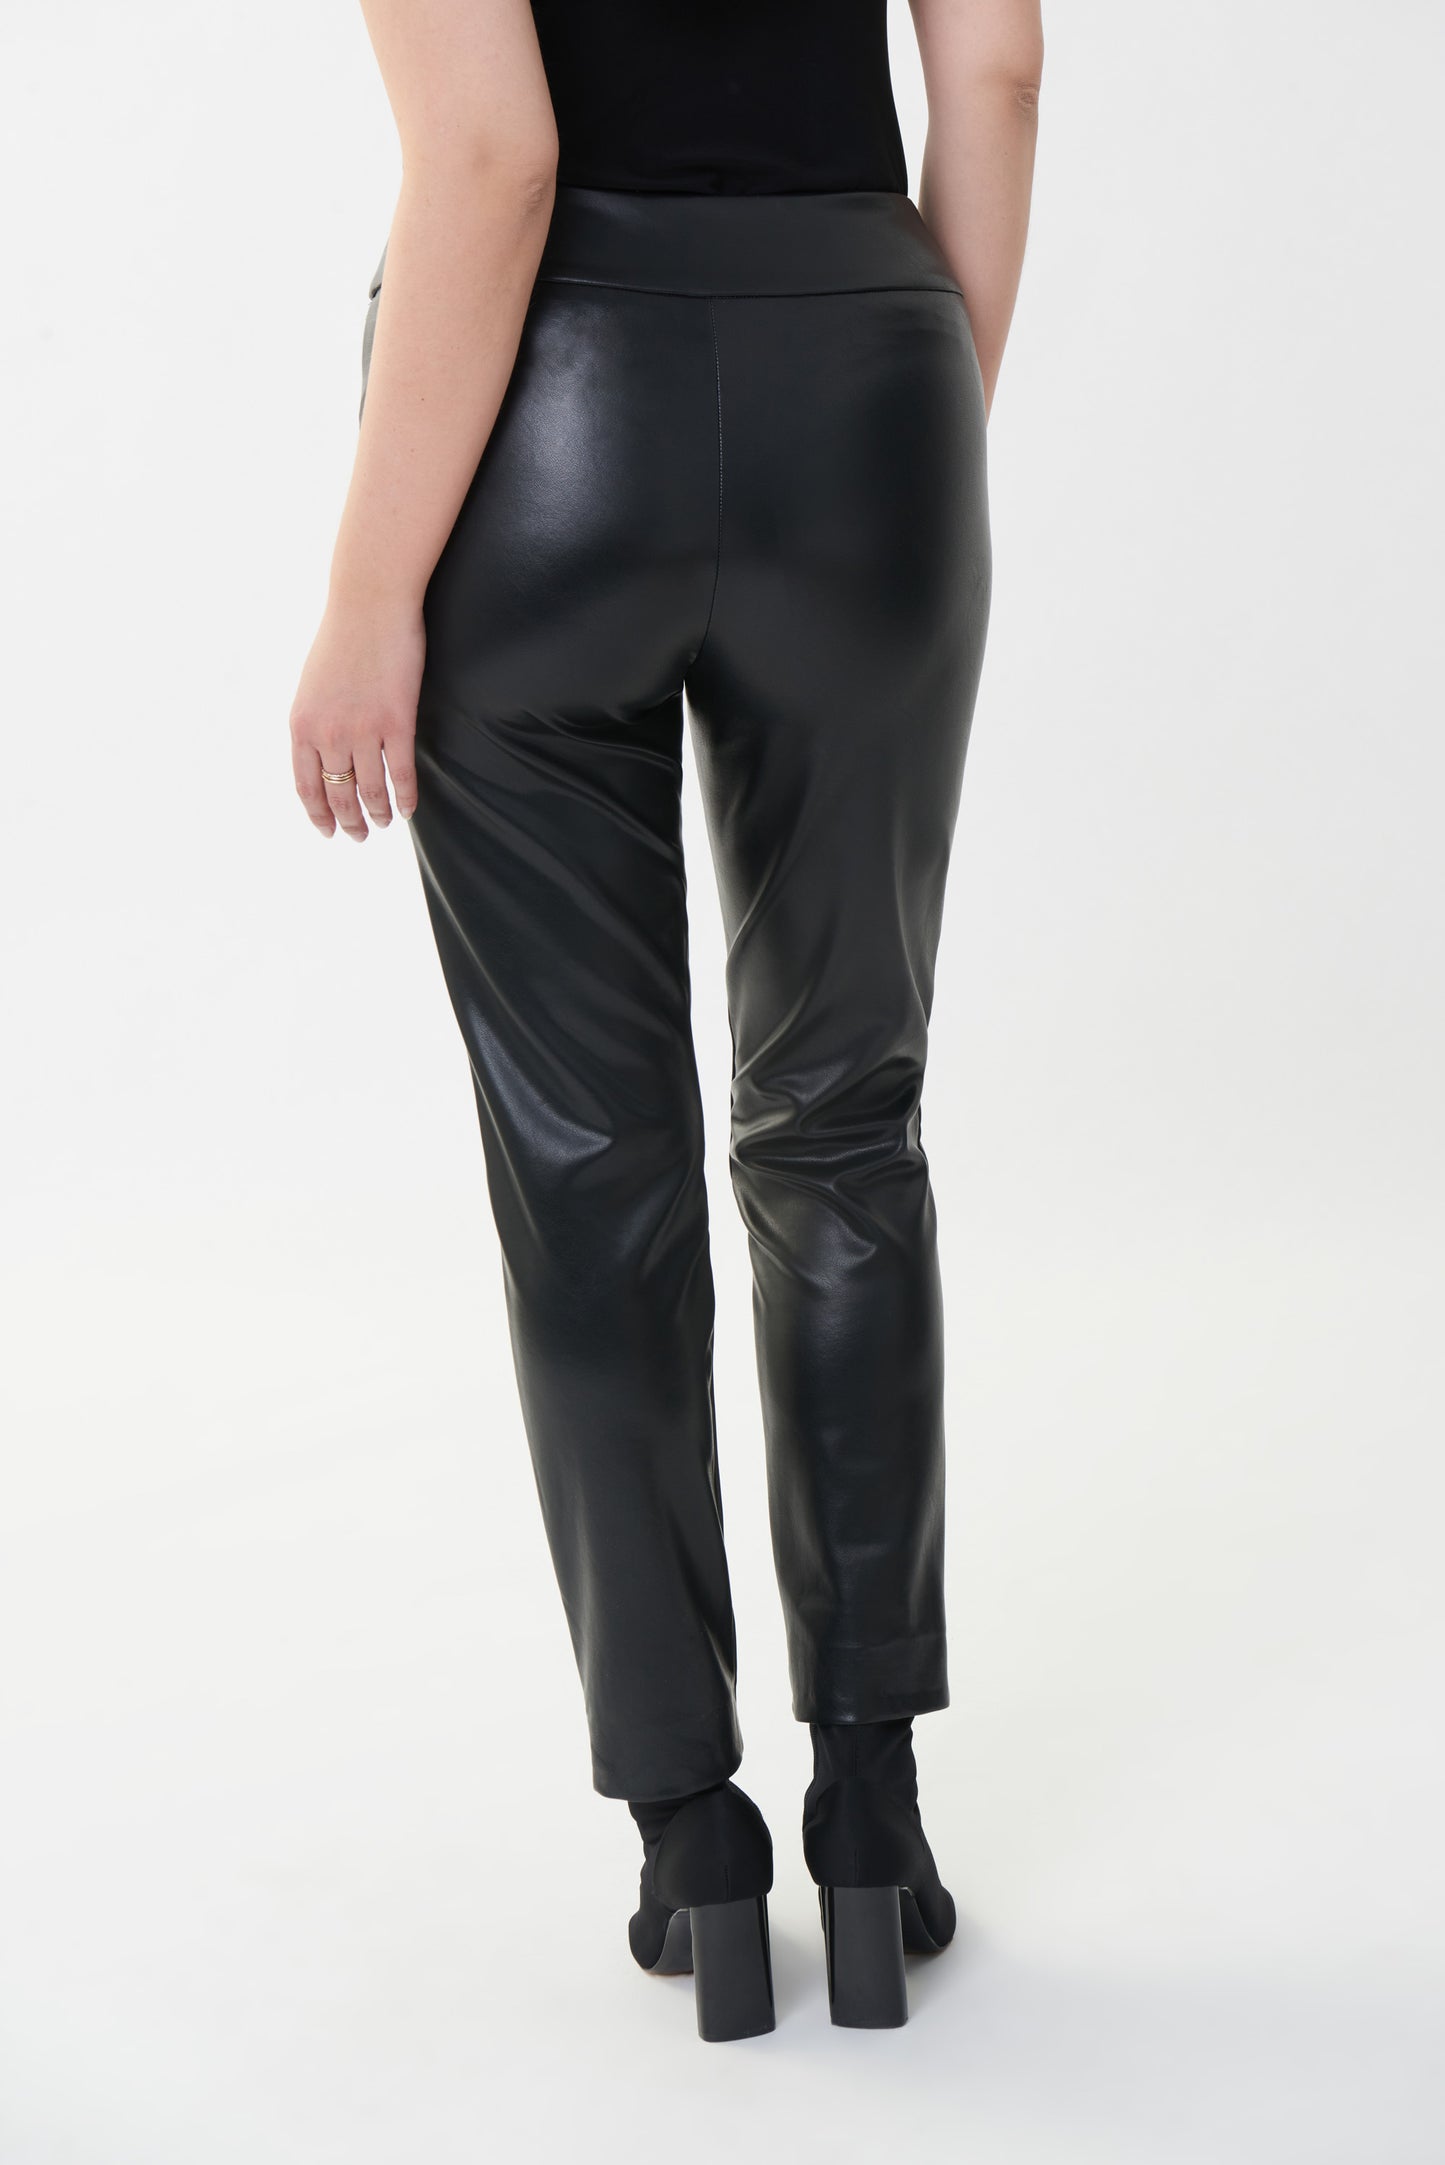 Pantalon noir ajusté en simili cuir - Modèle 223196